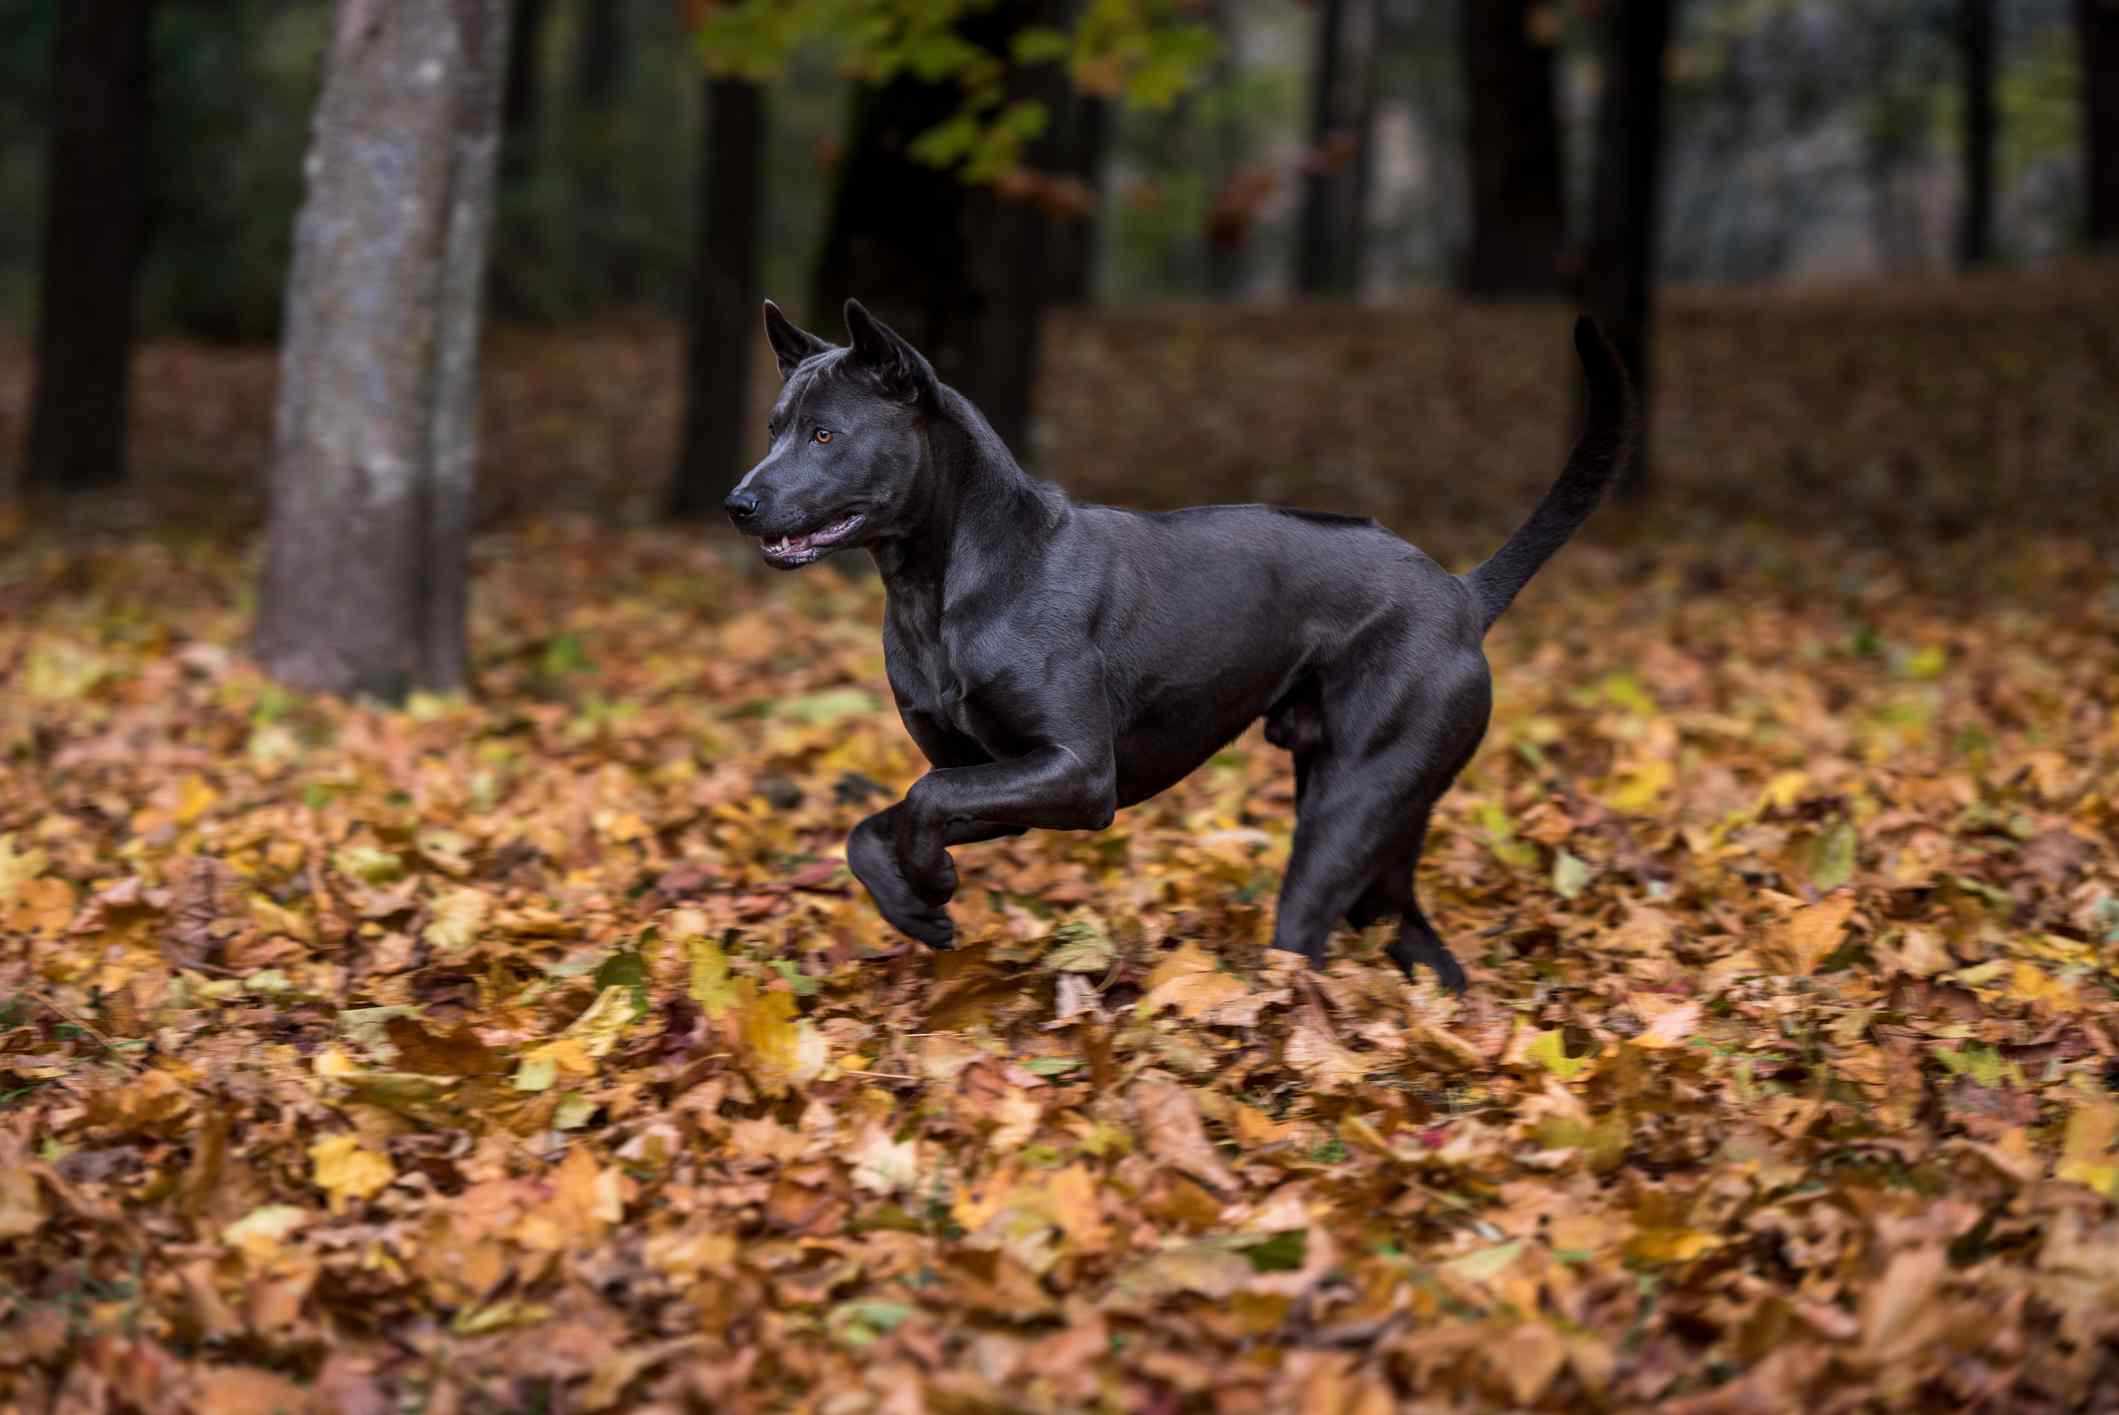 光滑的黑色泰国脊背龙在秋天的落叶中奔跑